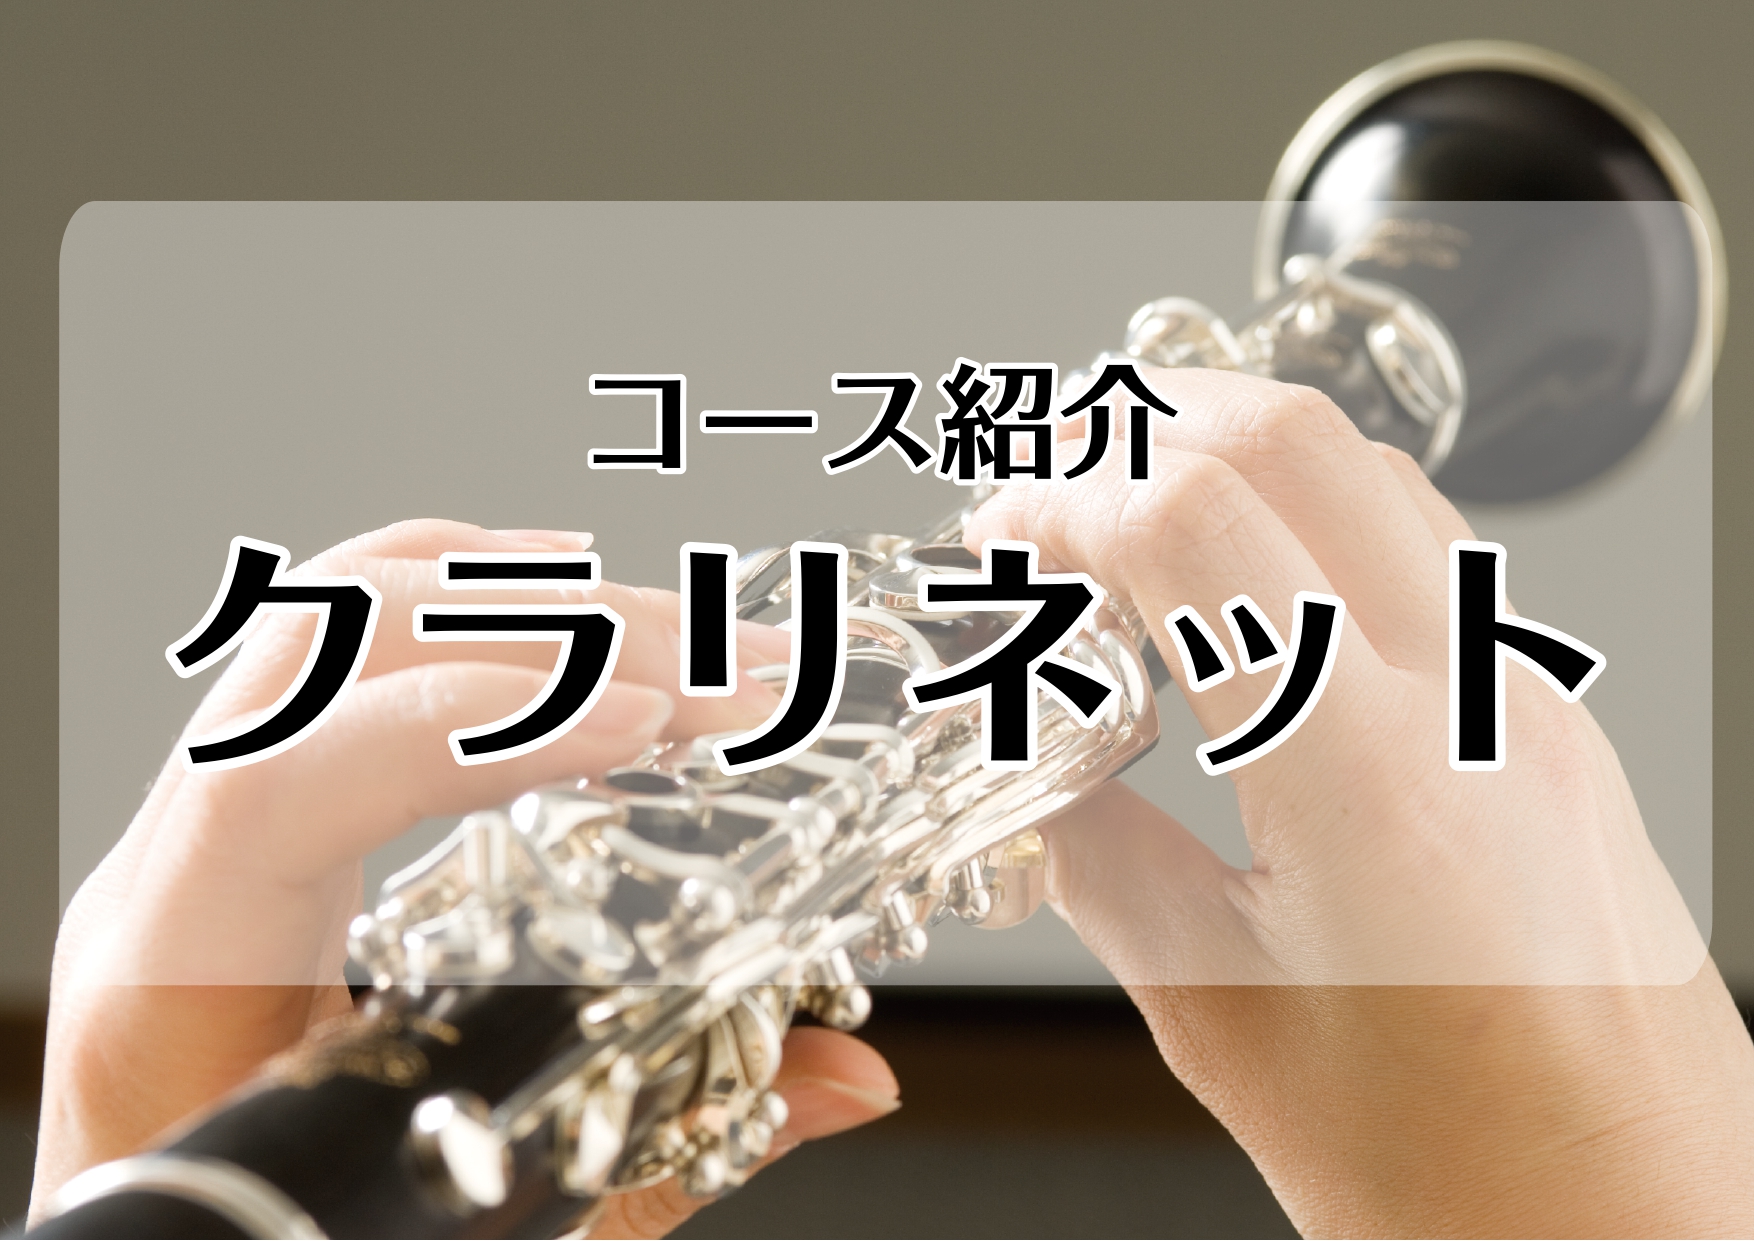 *[http://www.shimamura.co.jp/lesson/course/clarinet/:title=クラリネット] モーツァルトがこよなく愛したと言われるクラリネット。]]木管楽器では一番広い音域を誇り、キュートな音色から重厚な響きまで、多彩な表現力を持っています。]] 室内楽や吹 […]